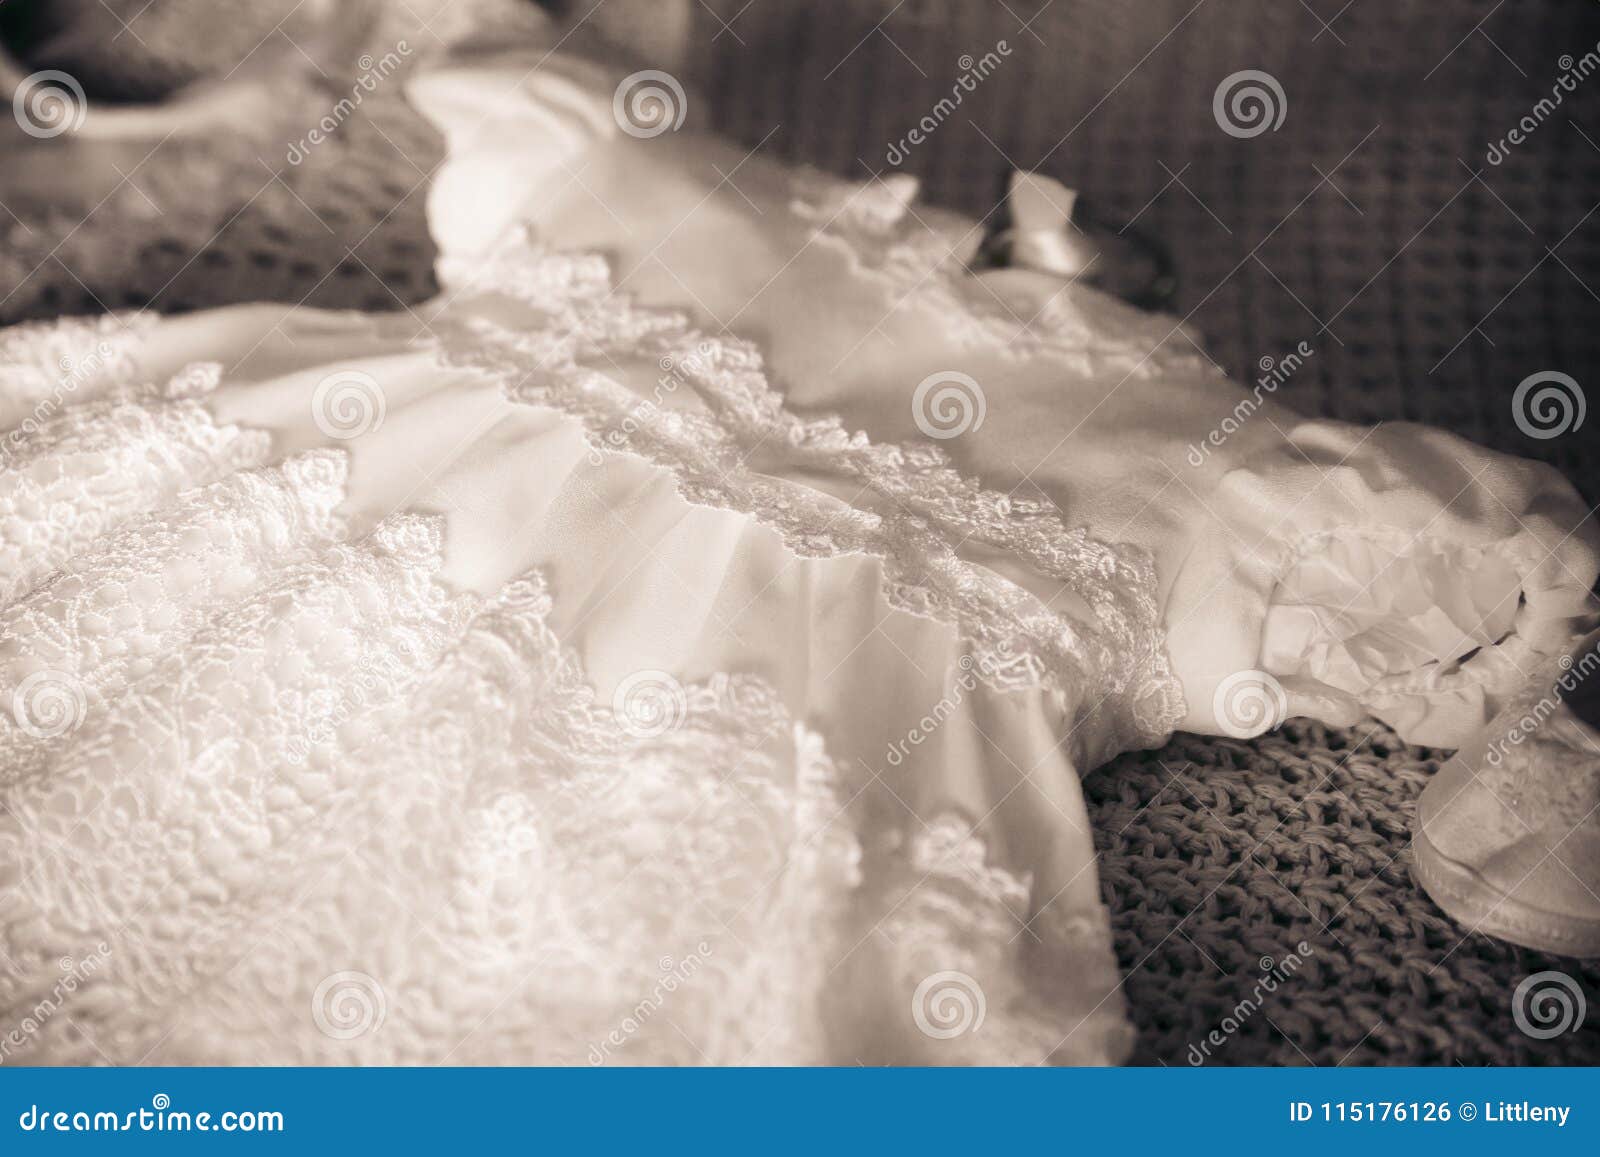 White Baptism Christening Dress for Girl Stock Photo - Image of ...